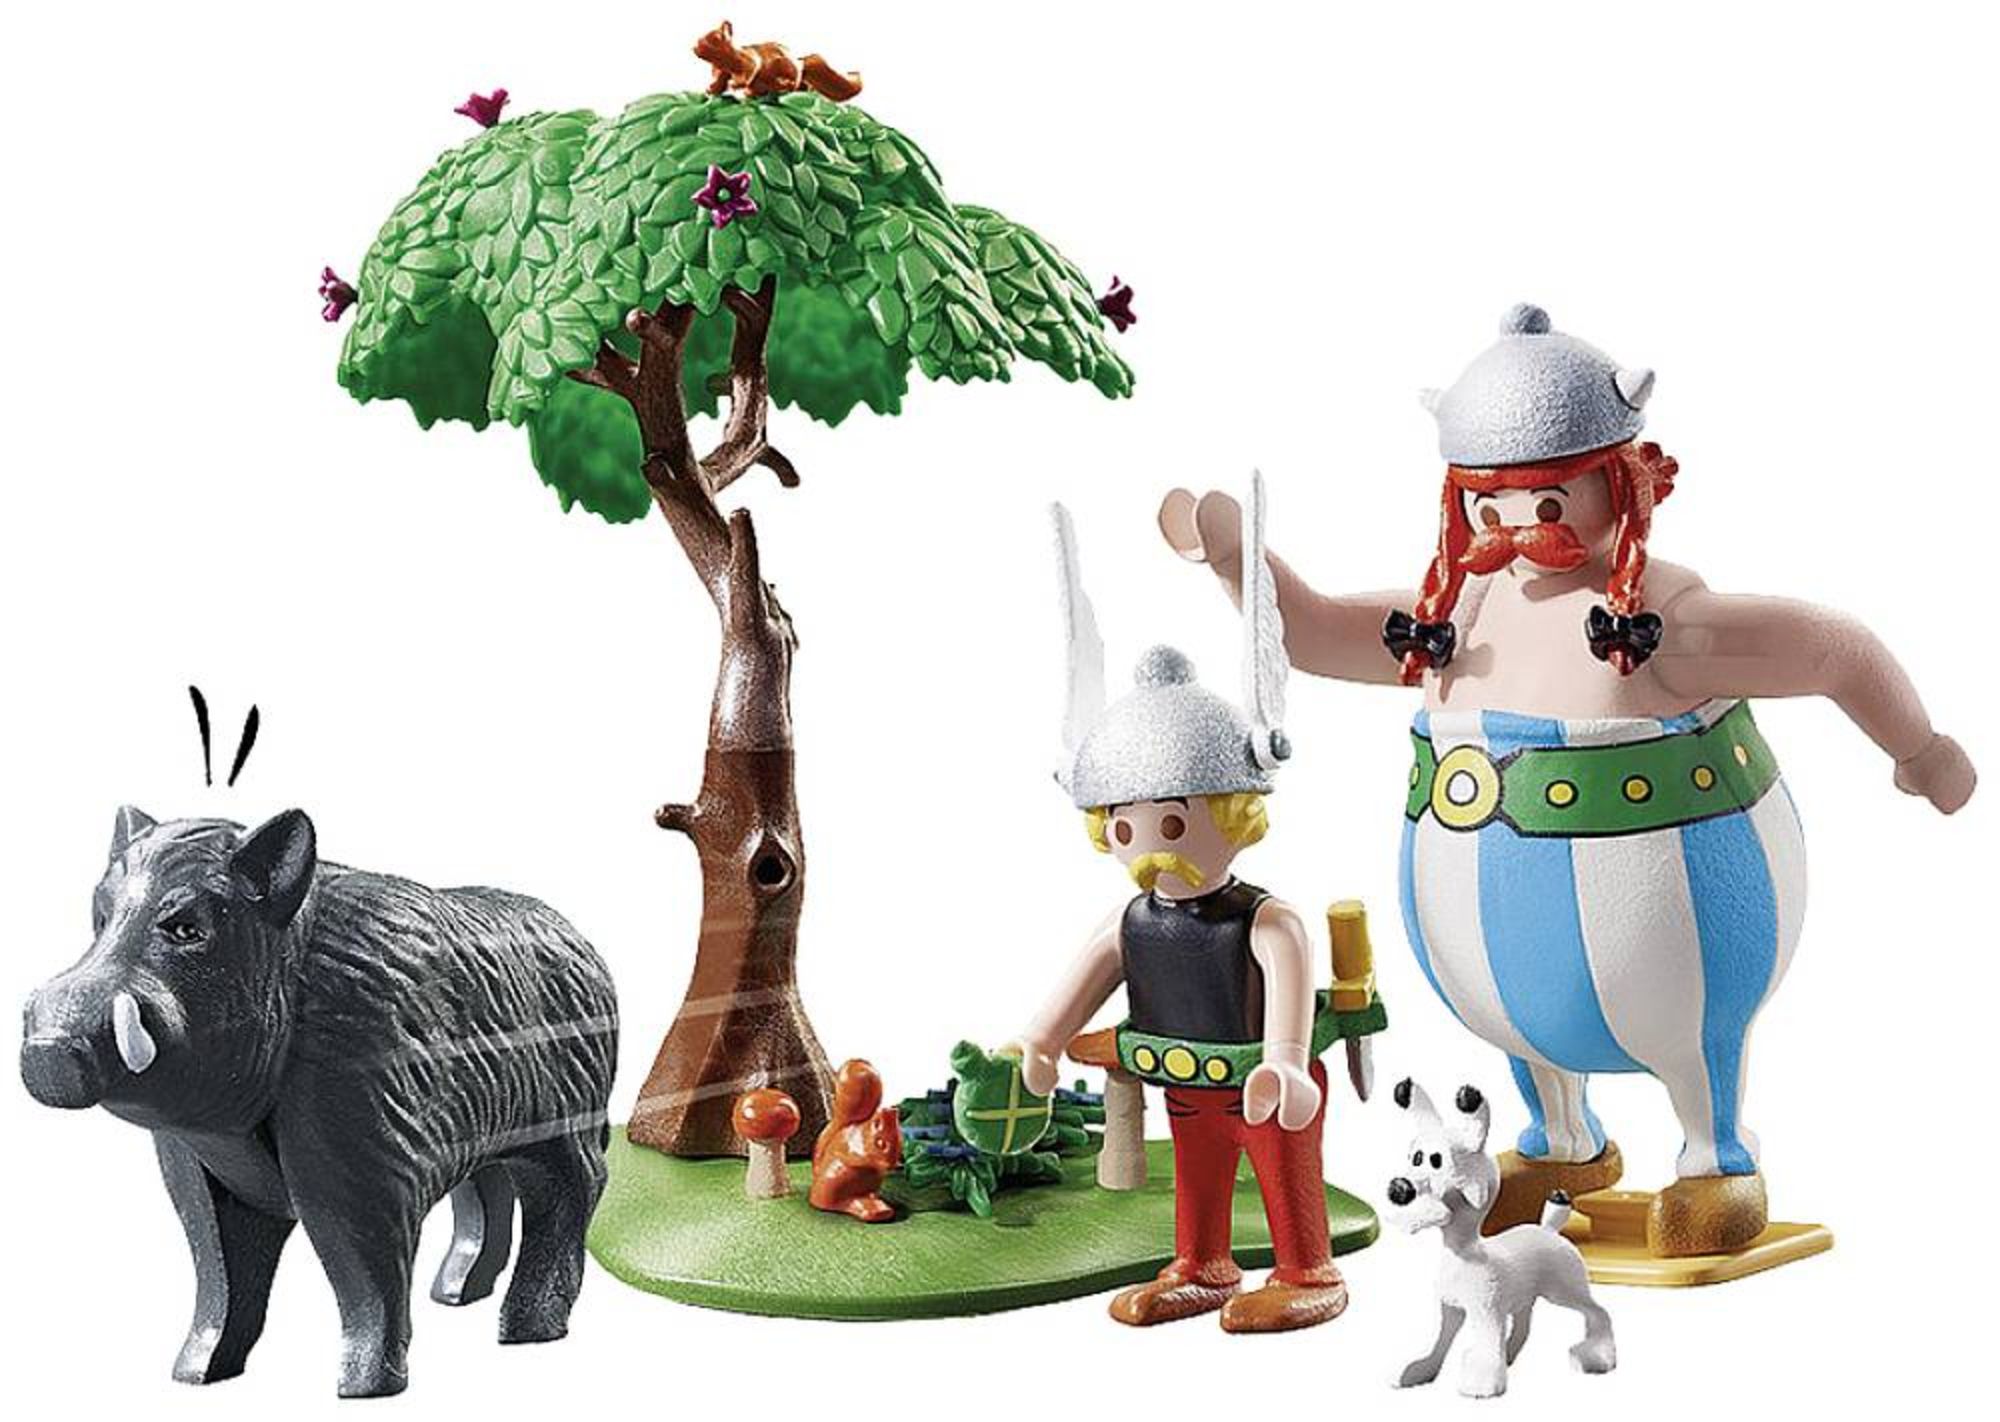 Playmobil® Asterix Wildschweinjagd 71160' kaufen - Spielwaren